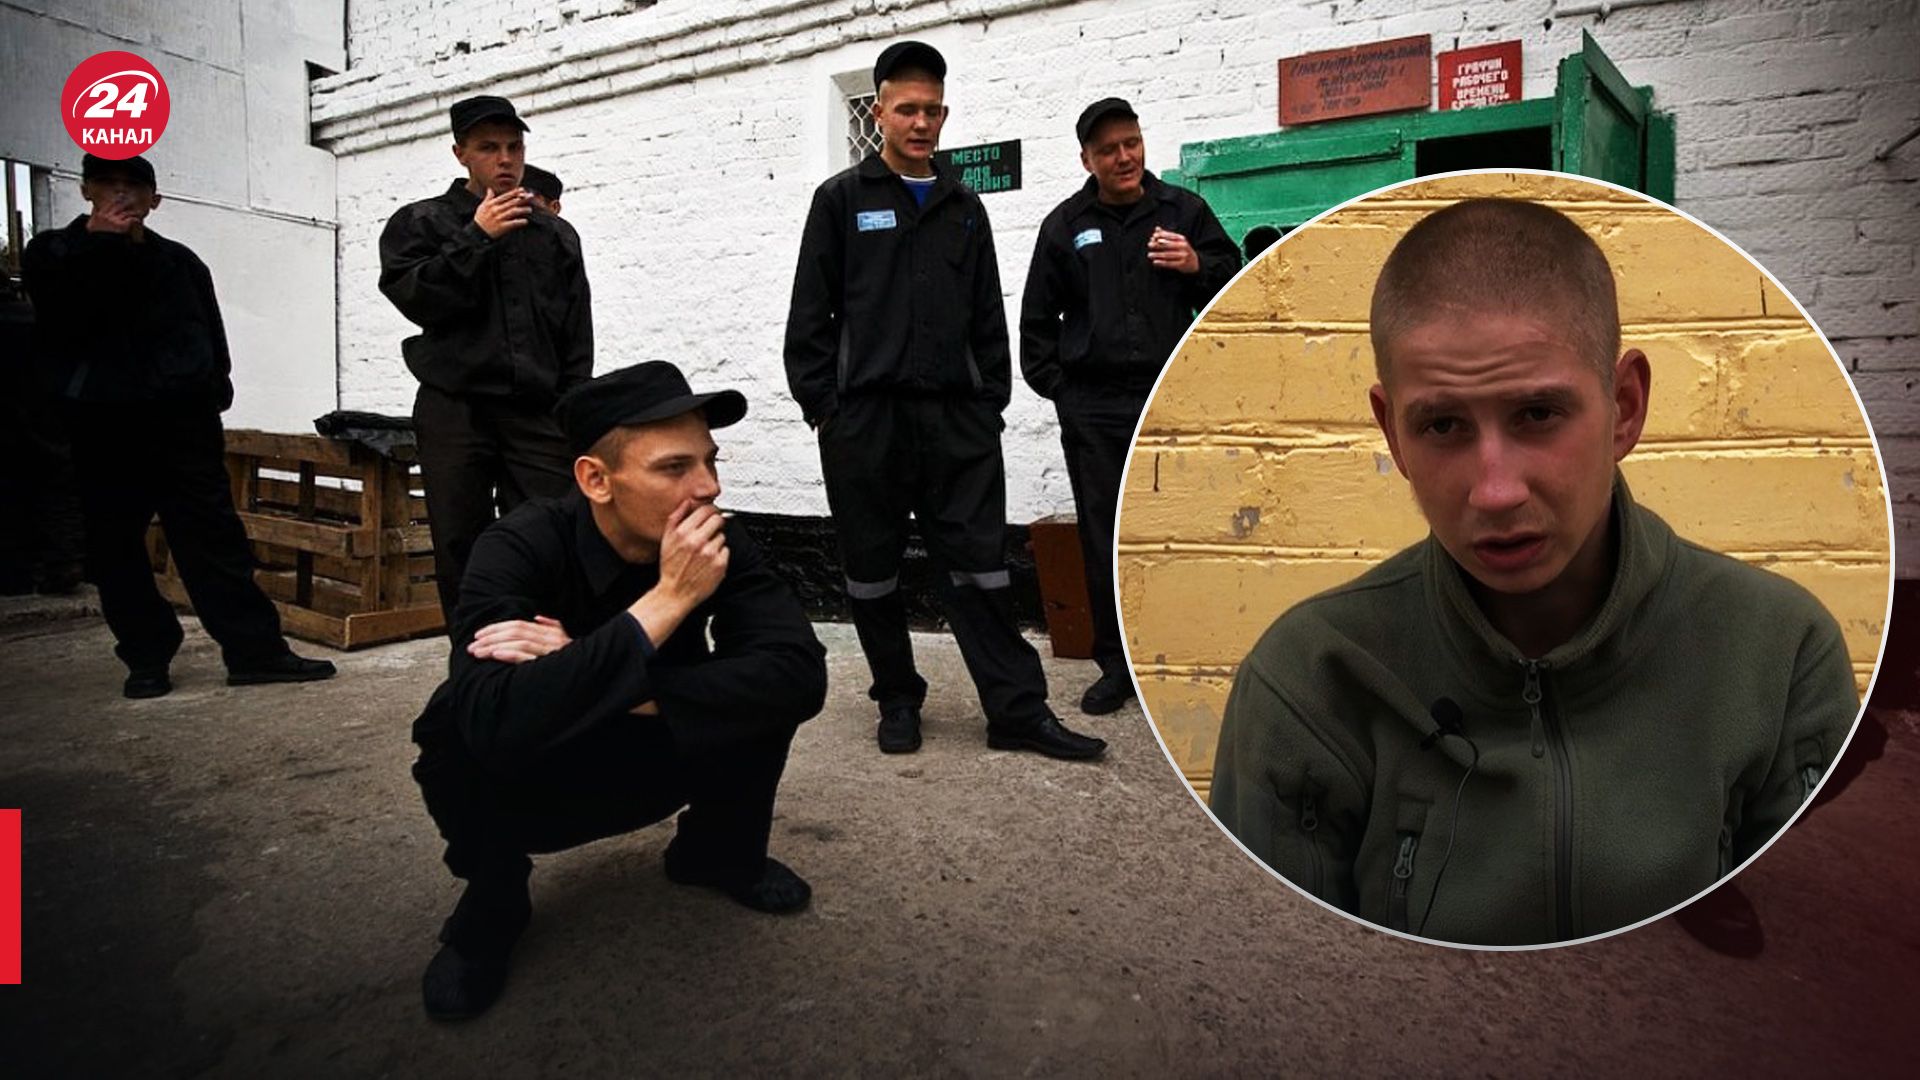 "Блатни" плохо относились, обворовывали, – 19-летний российский пленный о зеках в армии - 24 Канал